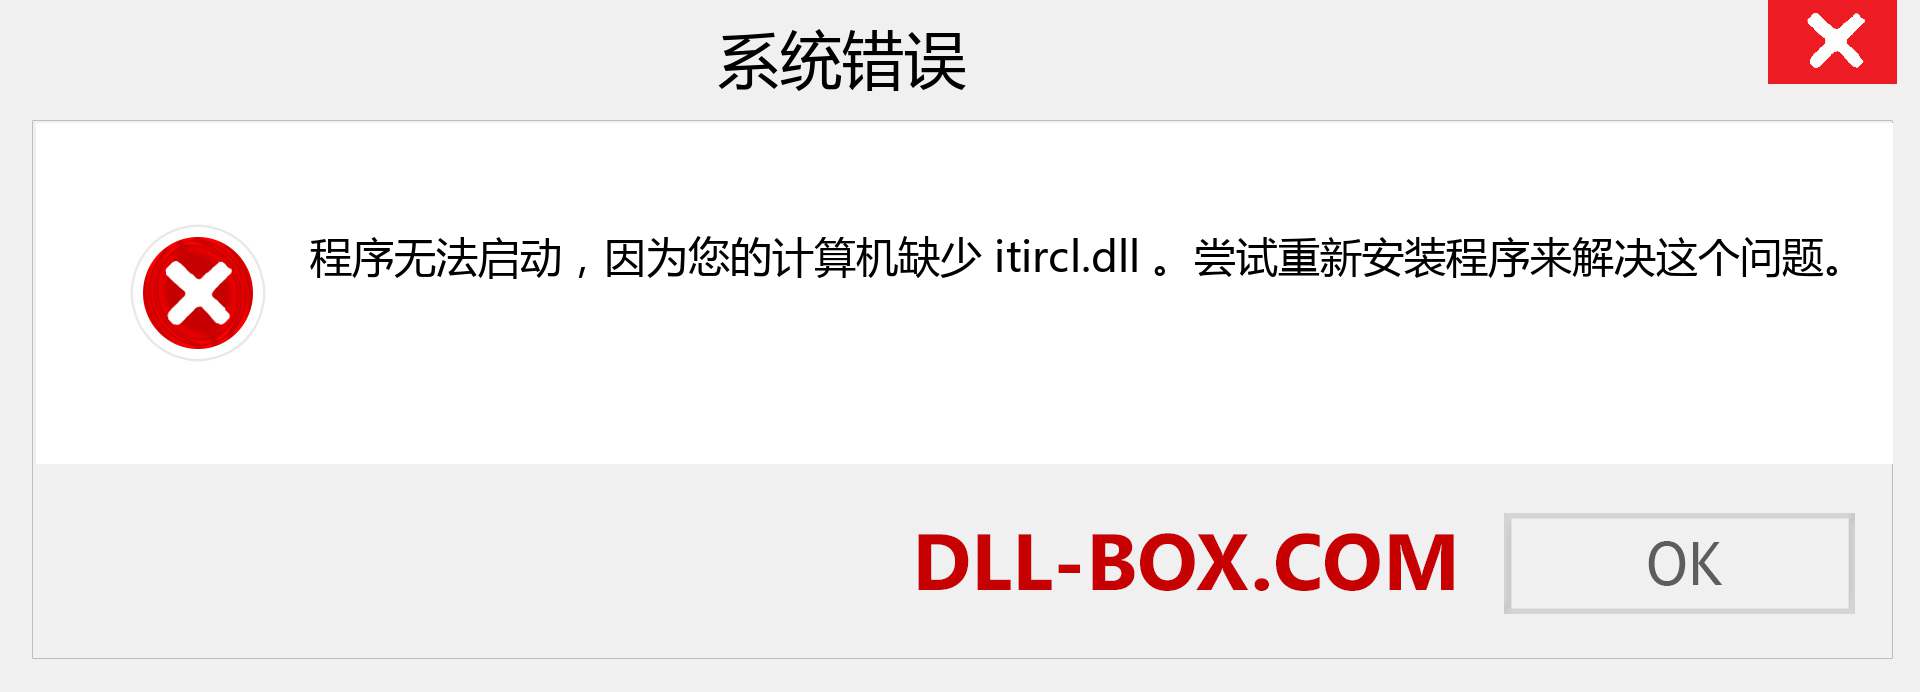 itircl.dll 文件丢失？。 适用于 Windows 7、8、10 的下载 - 修复 Windows、照片、图像上的 itircl dll 丢失错误